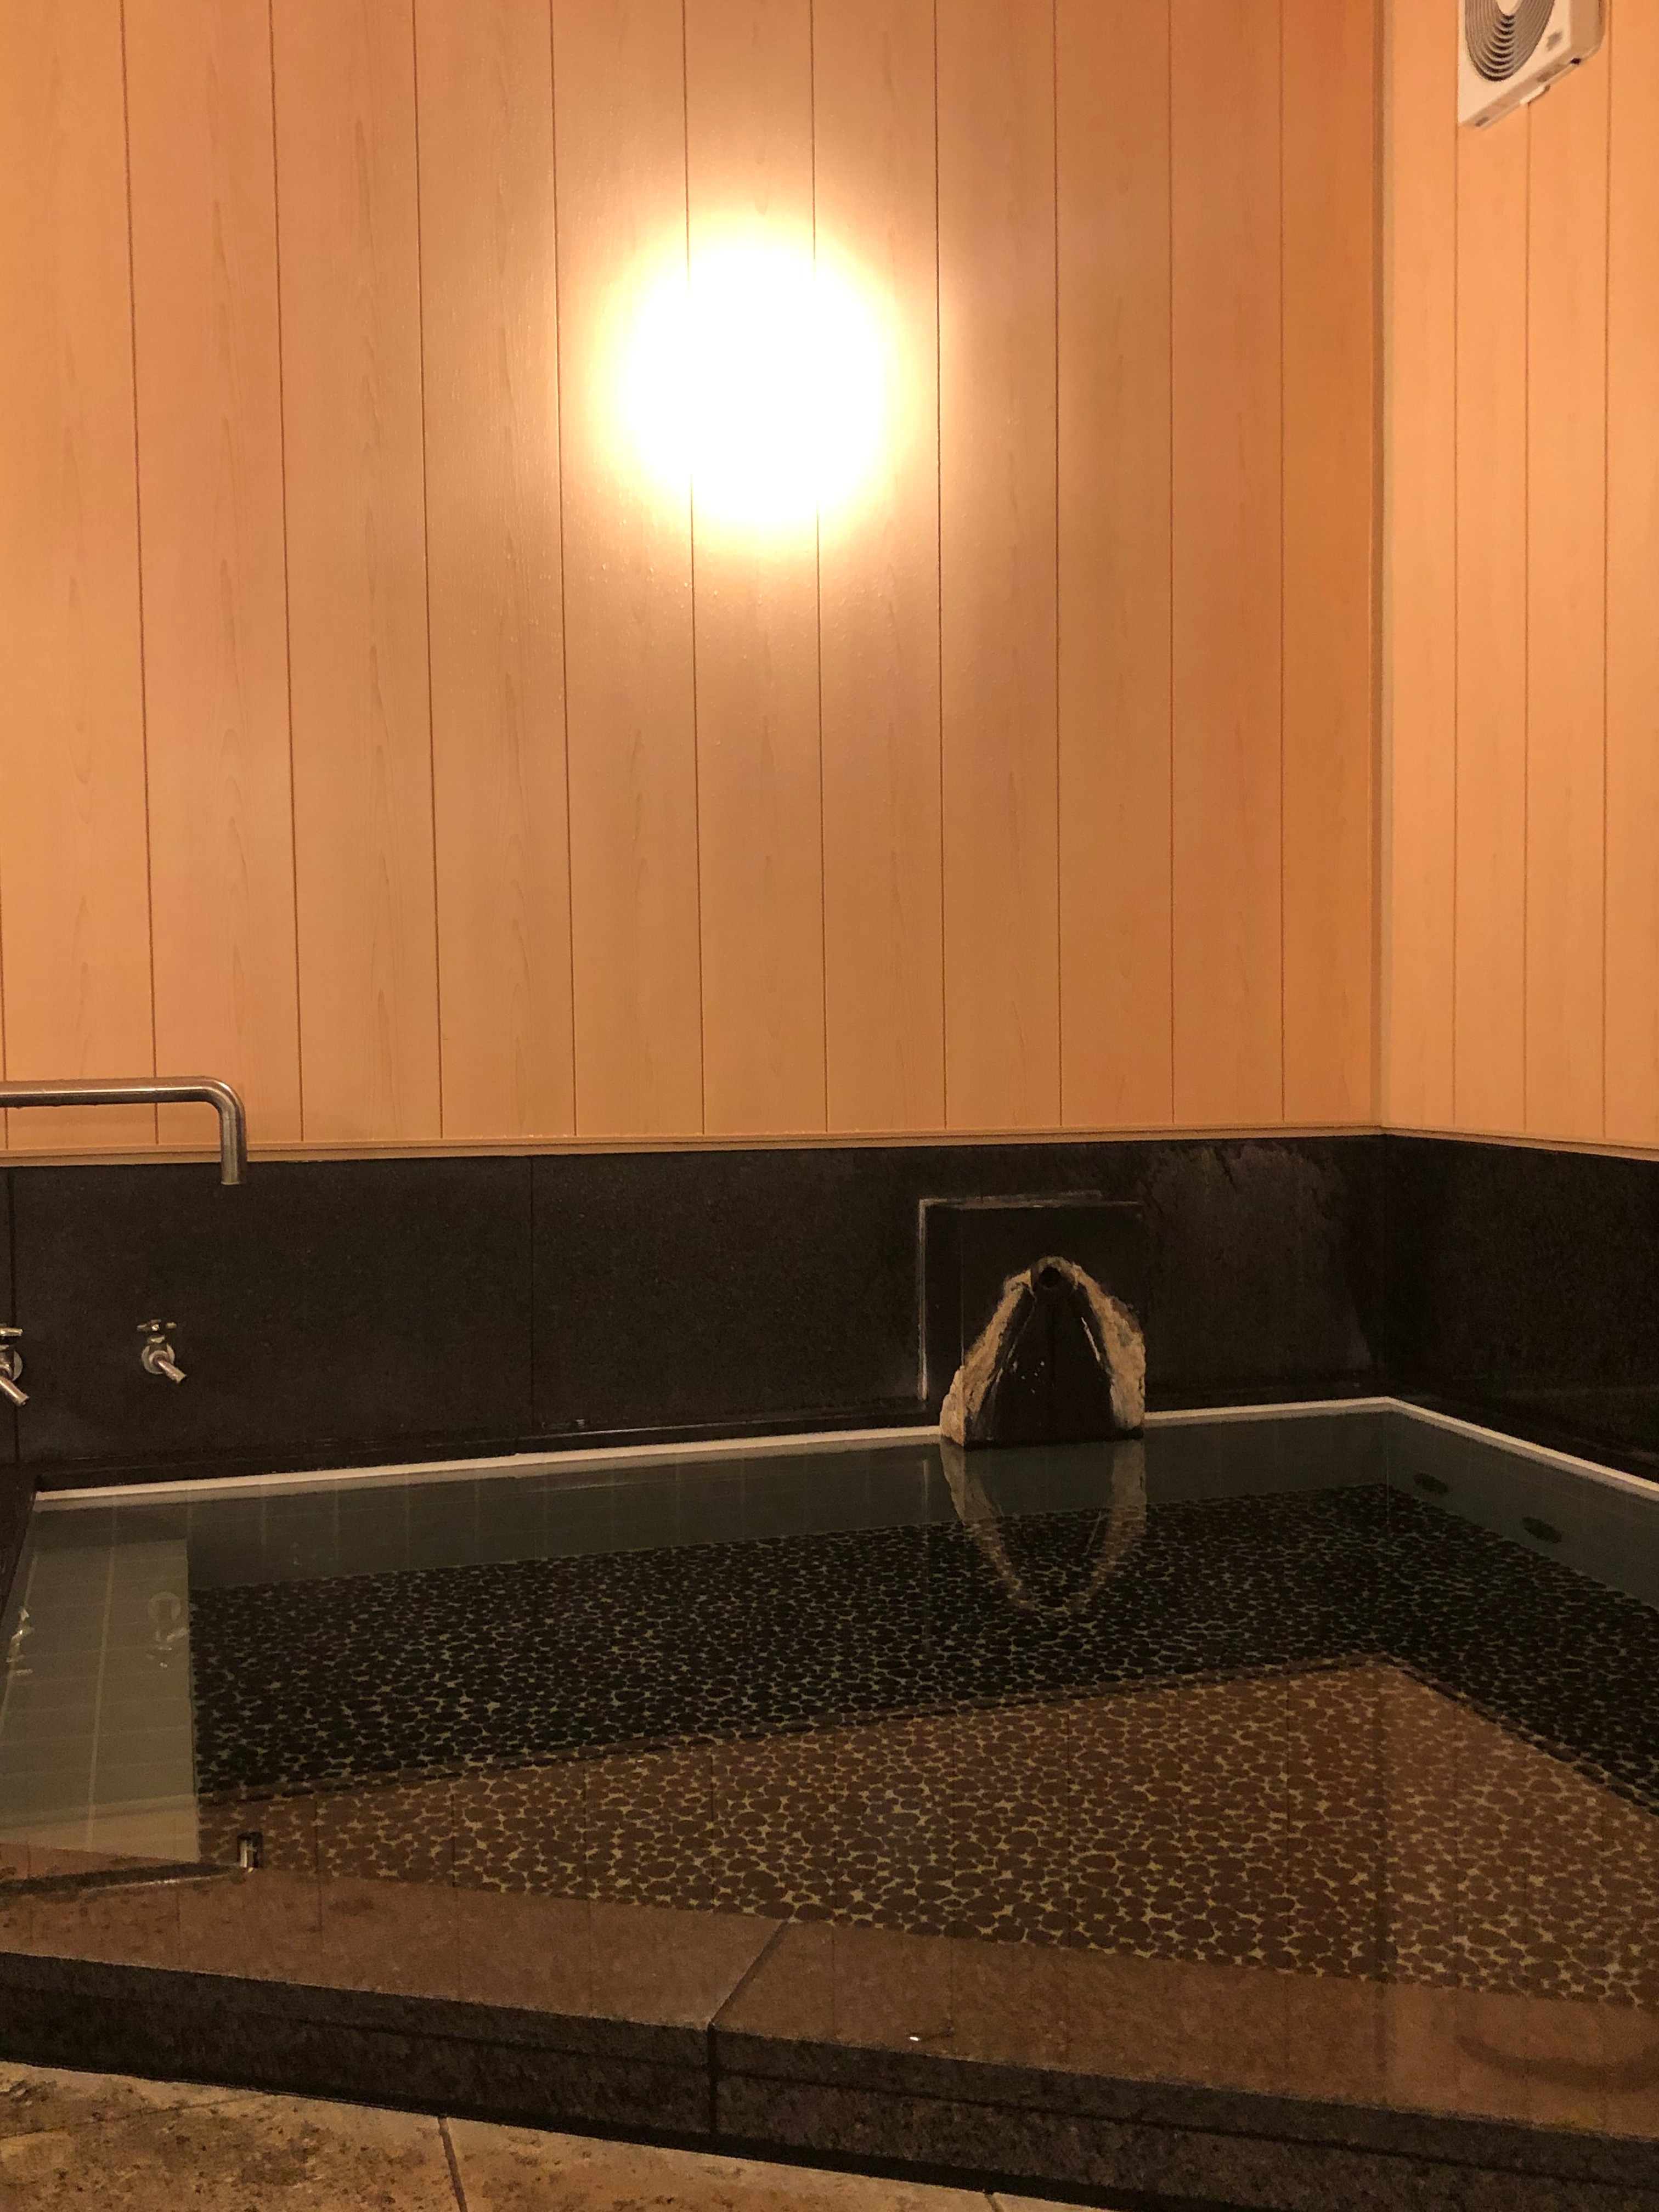 2019년 10월 개장한 남성 내 목욕